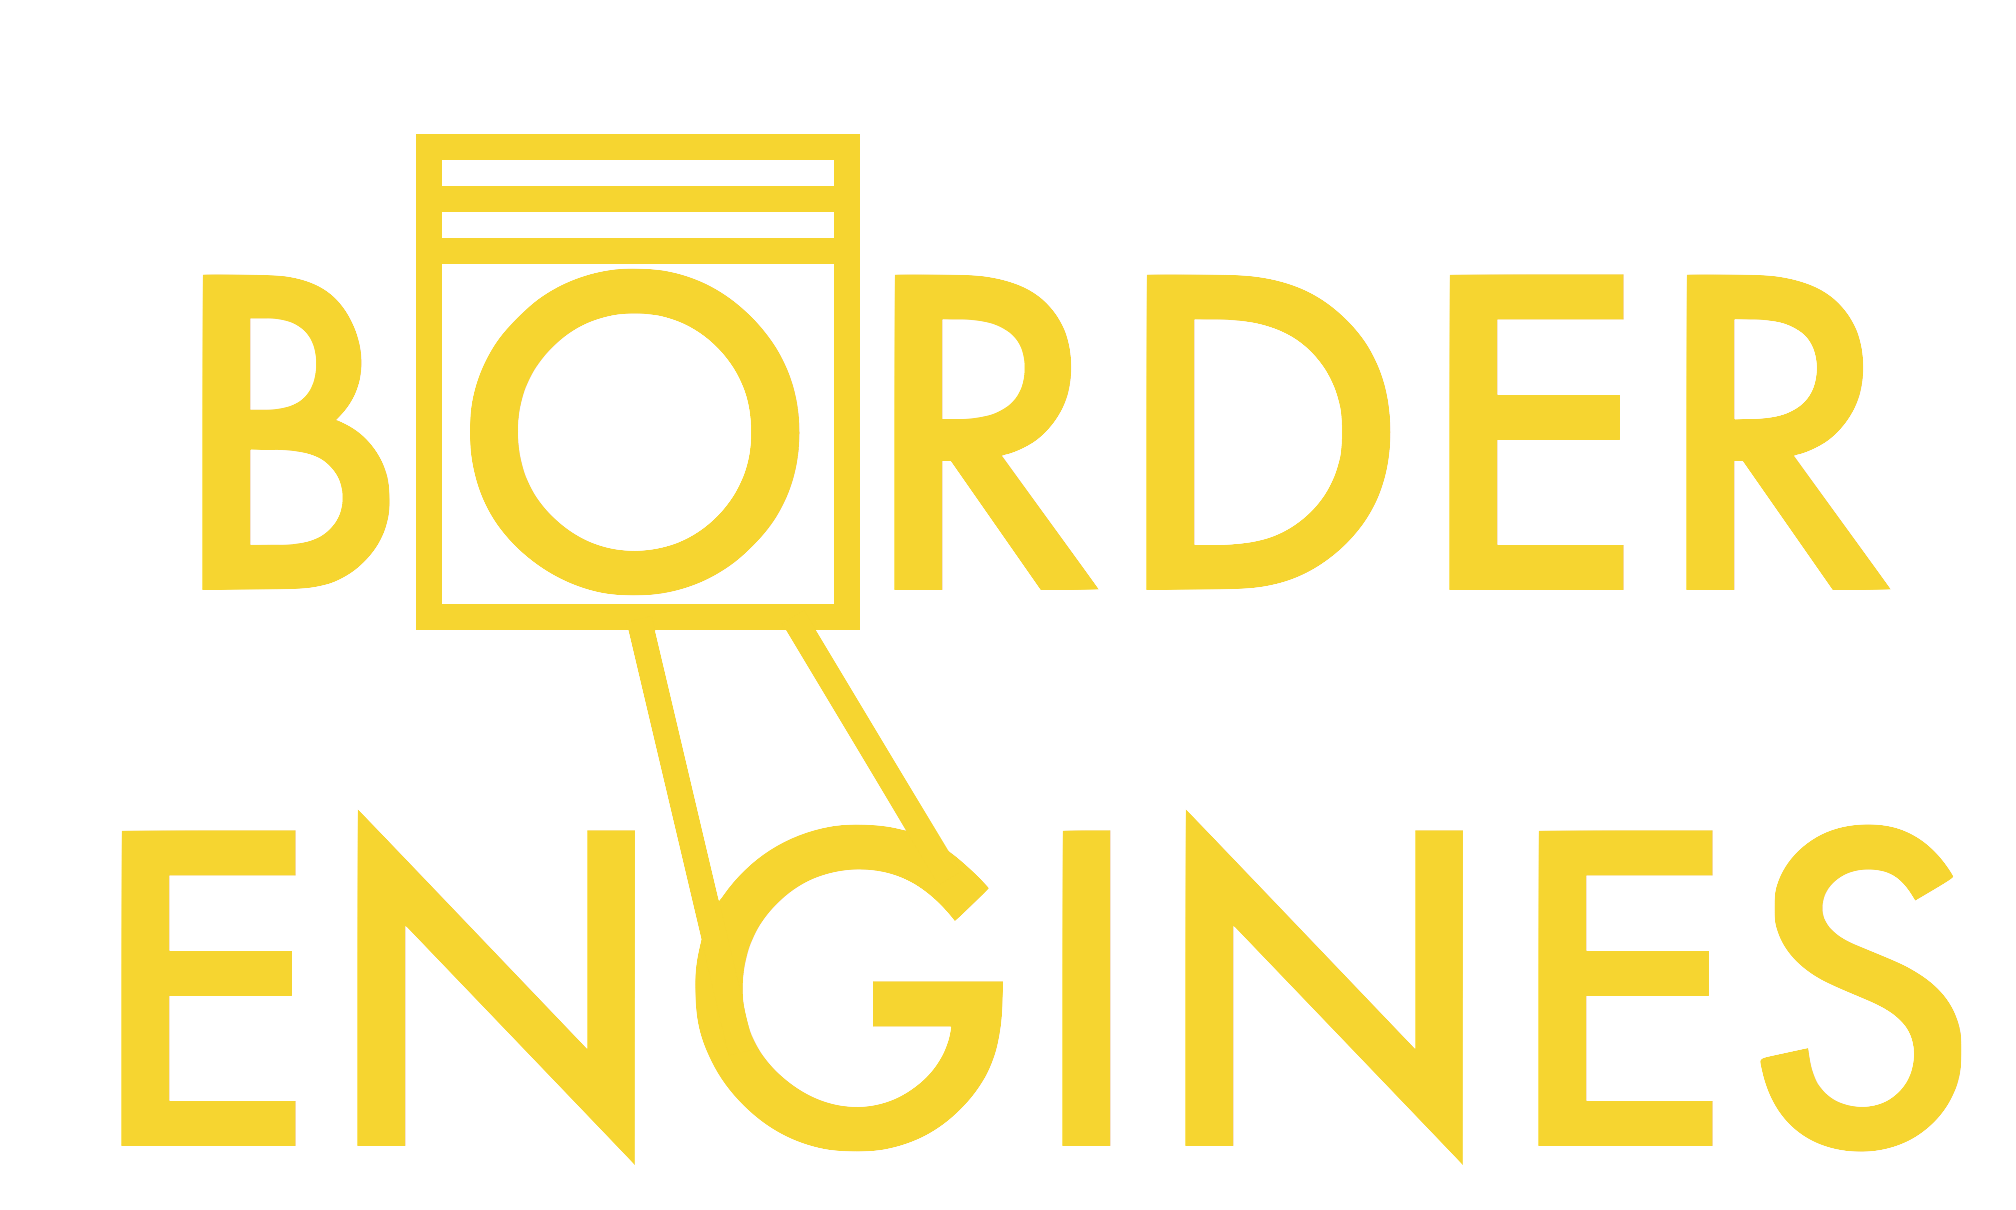  BORDER ENGINES